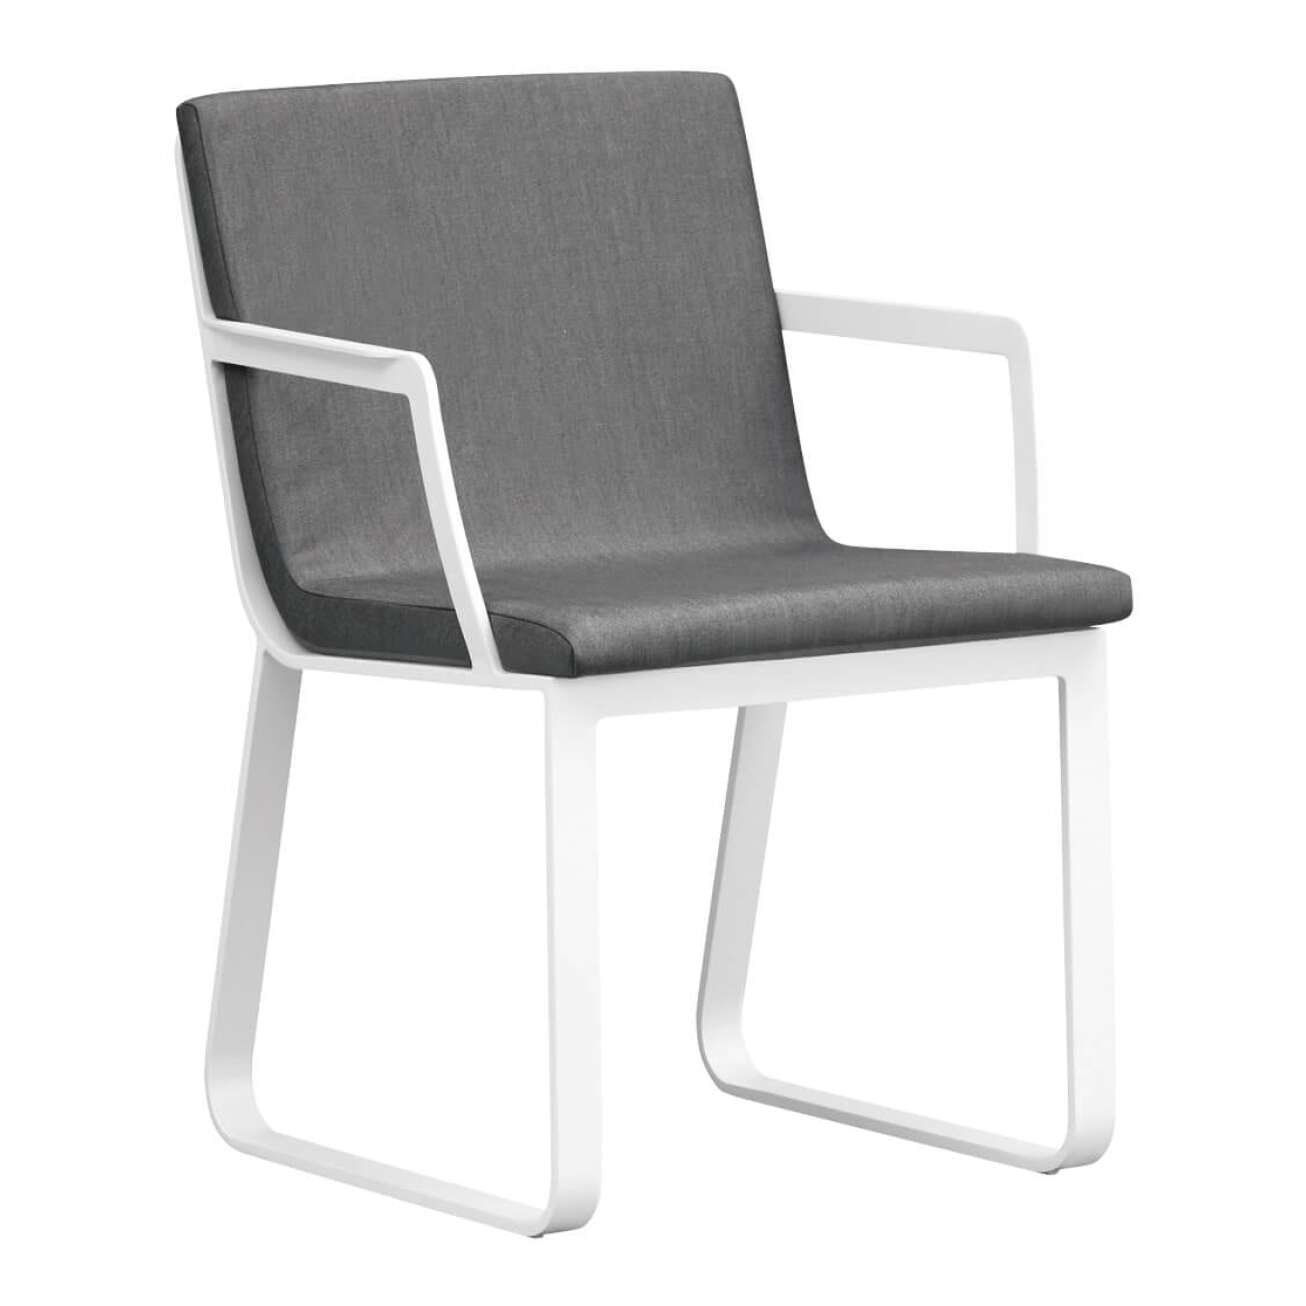 Stol i sortlakket aluminium med sete i grå tekstil med armlene